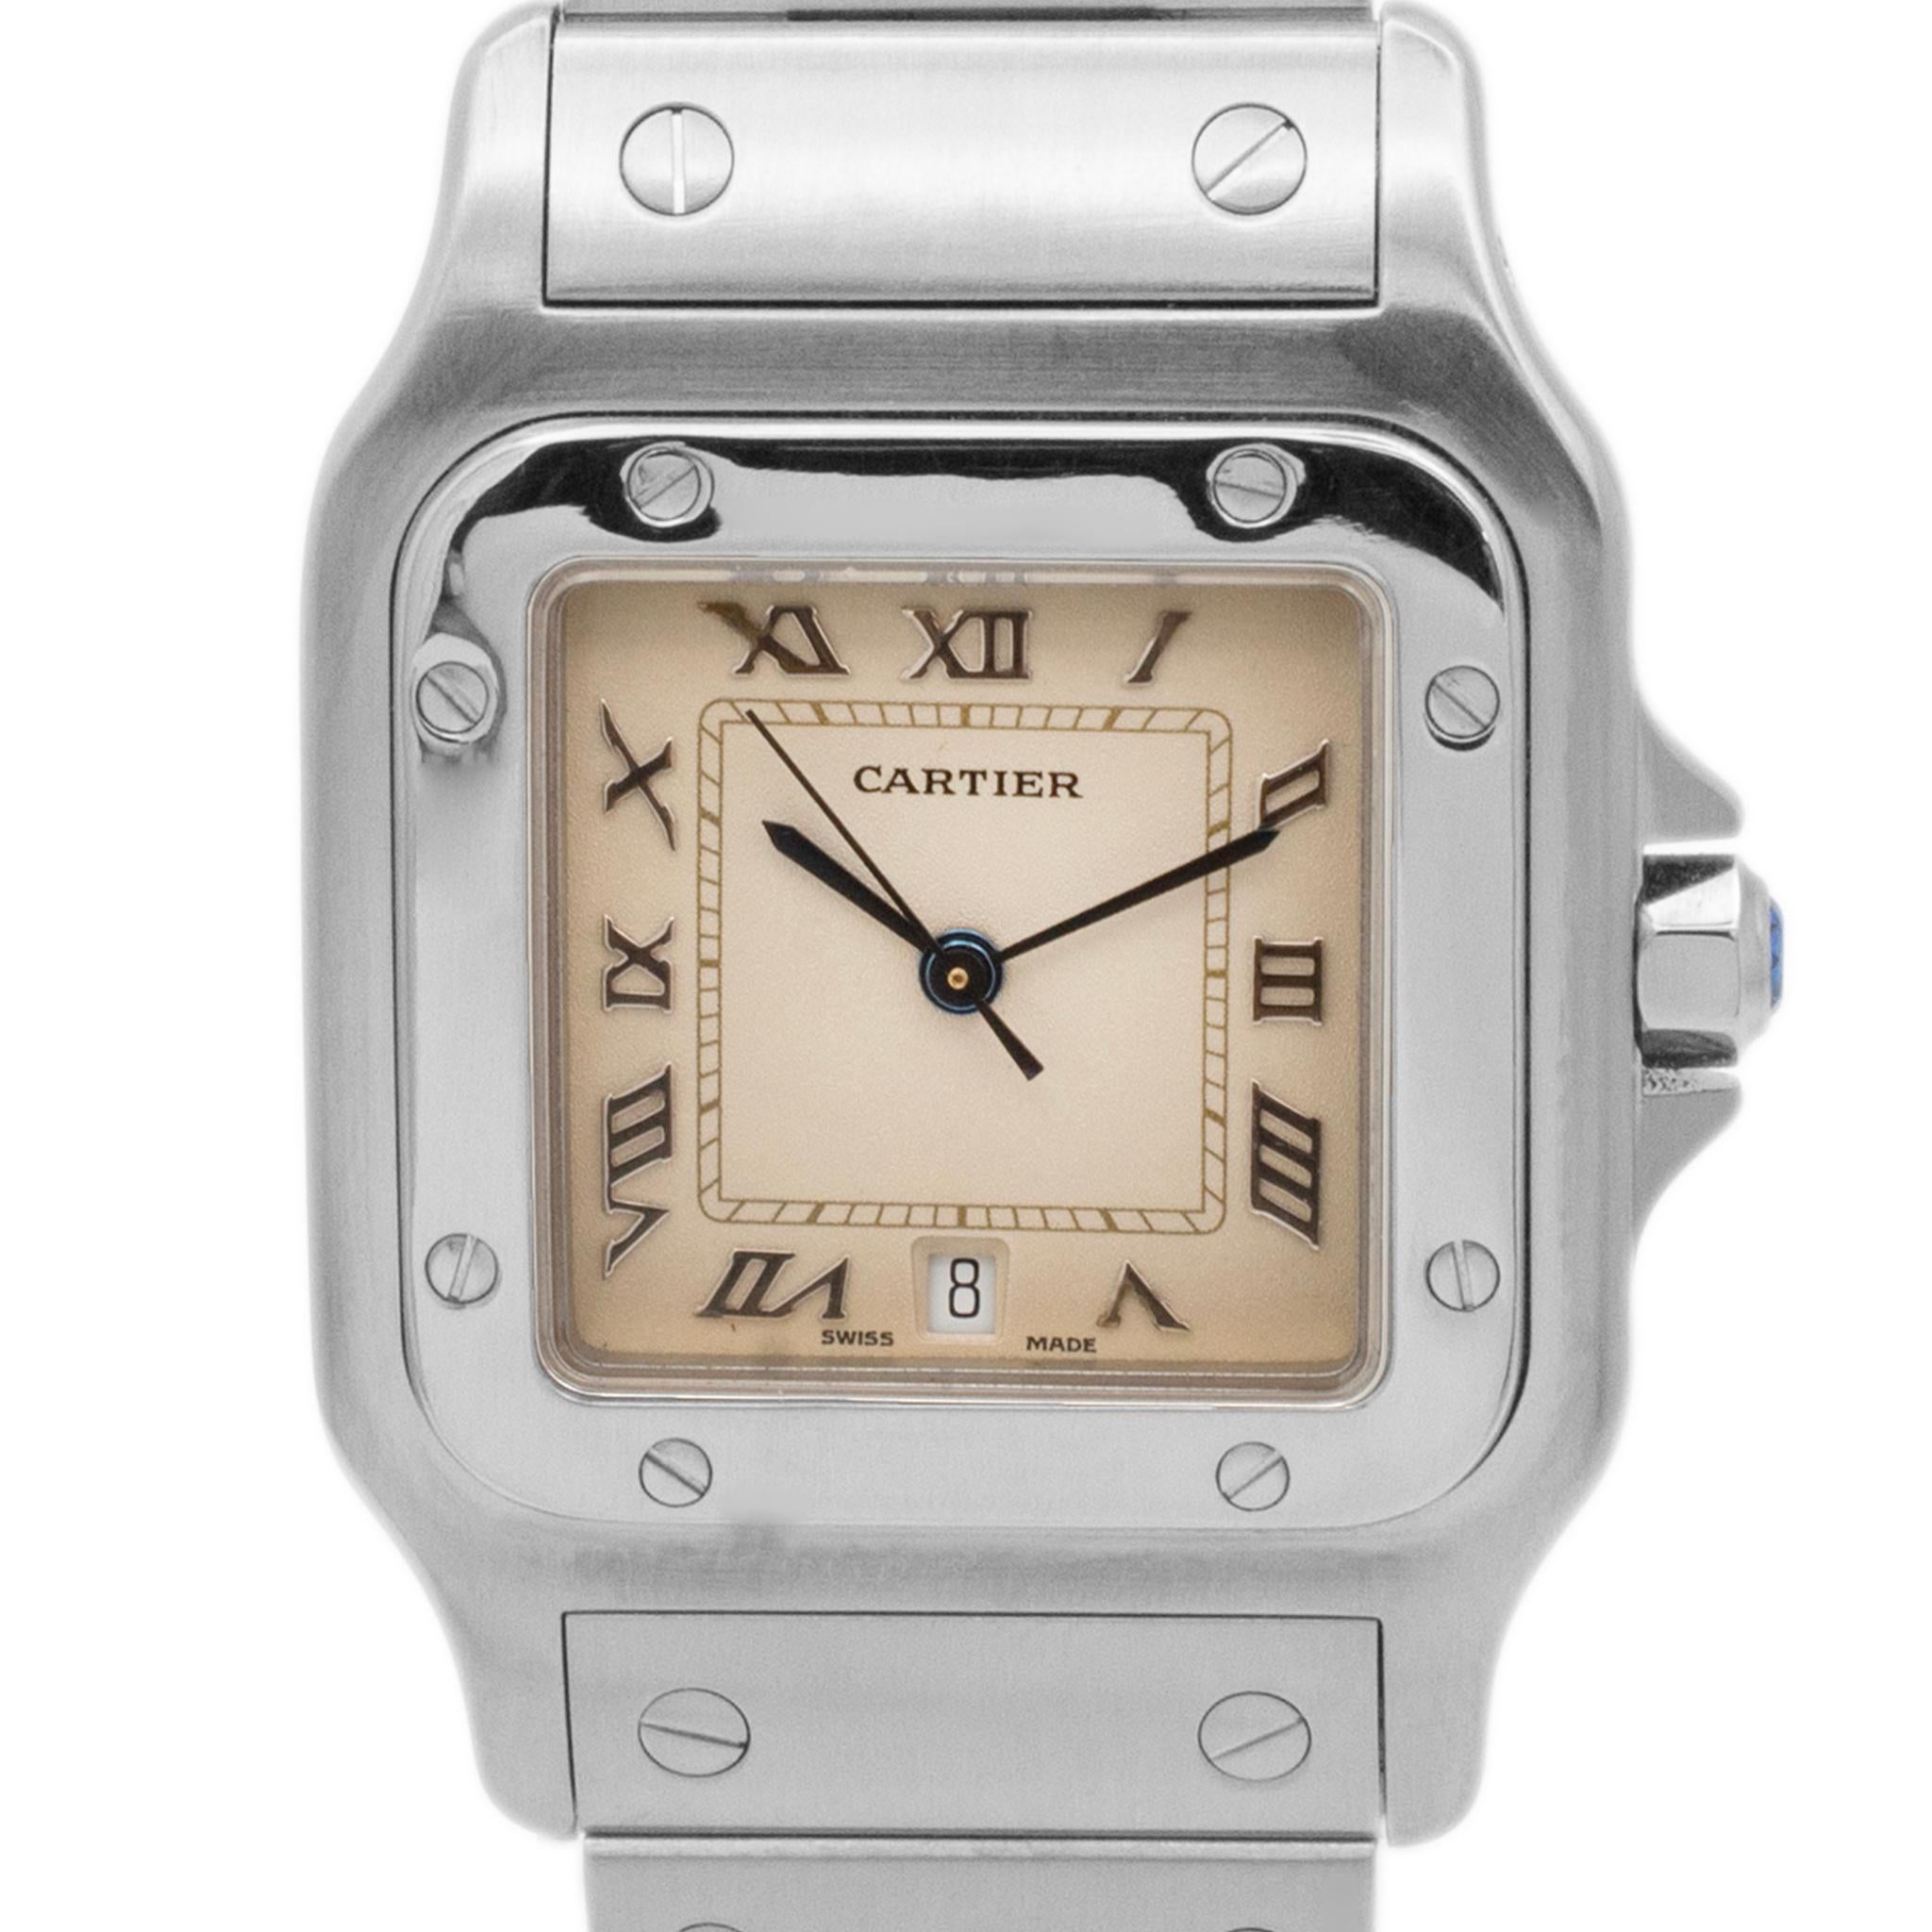 Marke: Cartier 

Geschlecht: Unisex

Metalltyp: Rostfreier Stahl

Gewicht: 84,56 Gramm

Schweizer Uhr aus Edelstahl, hergestellt von Cartier. Die Marke 